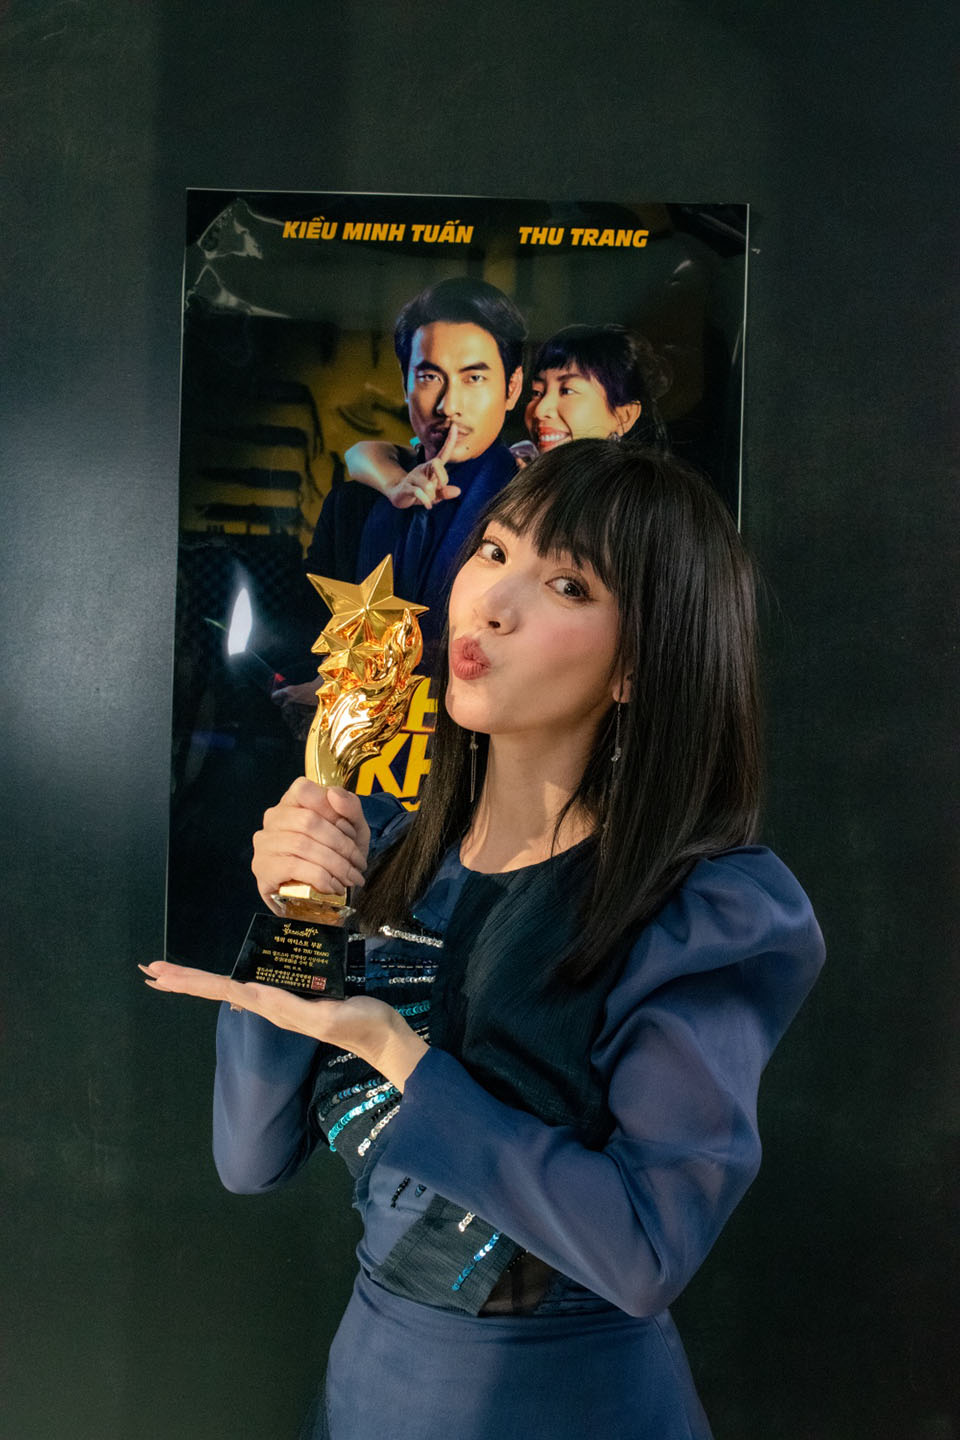 Thu Trang vinh dự nhận giải thưởng&nbsp;"Nữ nghệ sĩ Quốc tế xuất sắc nhất"